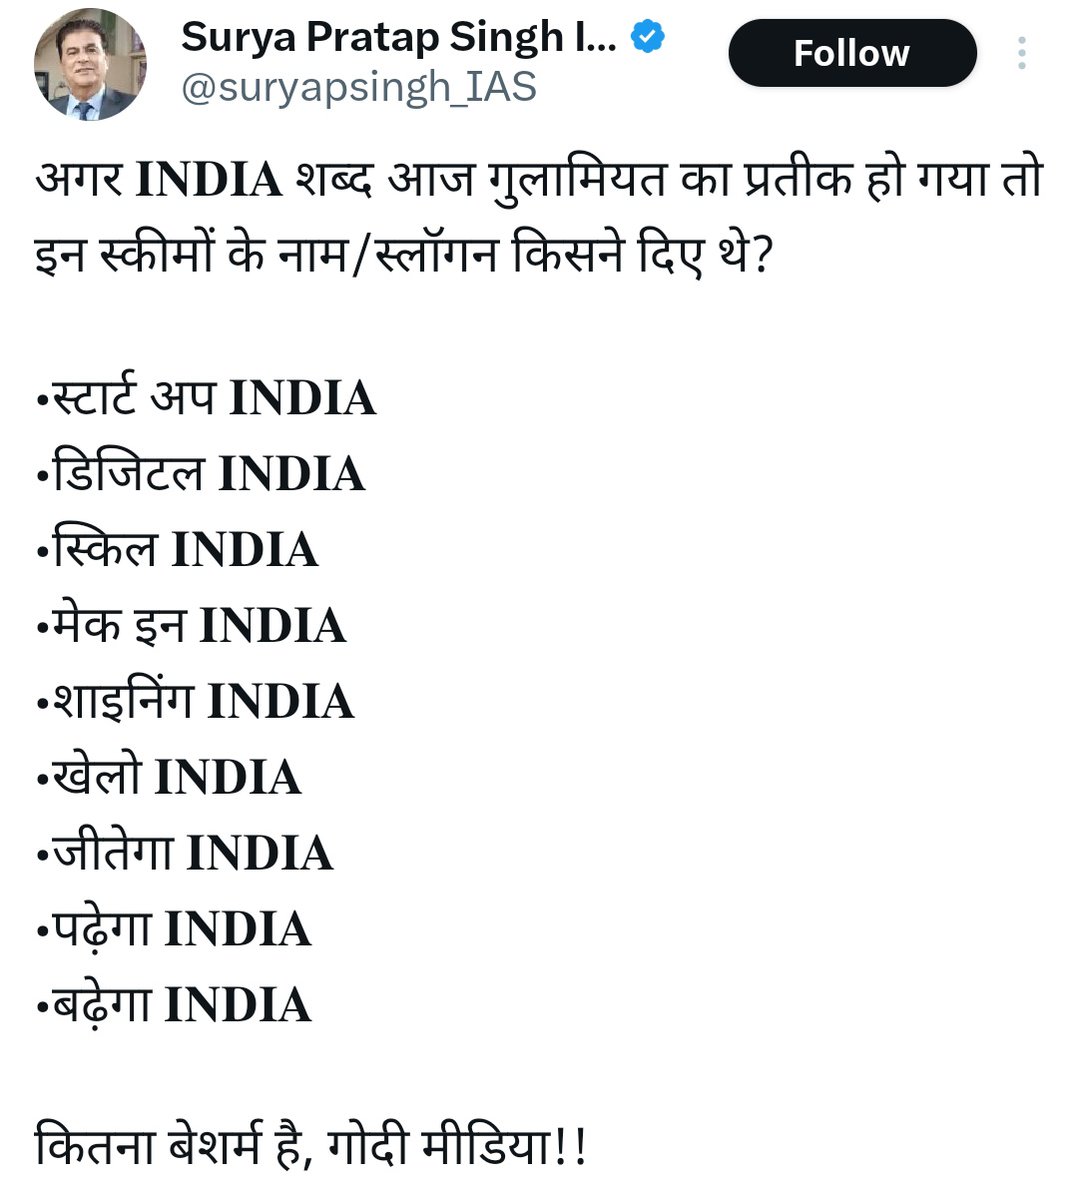 विपक्षी 'इंडिया' का तोड़ खोज रही है देशद्रोही भाजपा!!

तो बहुत संभव है कि वो 'इंडिया बनाम भारत' शुरु कर दे!! 

तब उसे अपने सारे सरकारी स्लोगन में इंडिया की जगह भारत लिखना पड़ेगा!!

मसलन, शाइनिंग इंडिया की जगह उसे लिखना पड़ेगा शाइनिंग भारत!!

#बैलटलाओ_भारतबचाओ
#BanEVM_SaveIndia